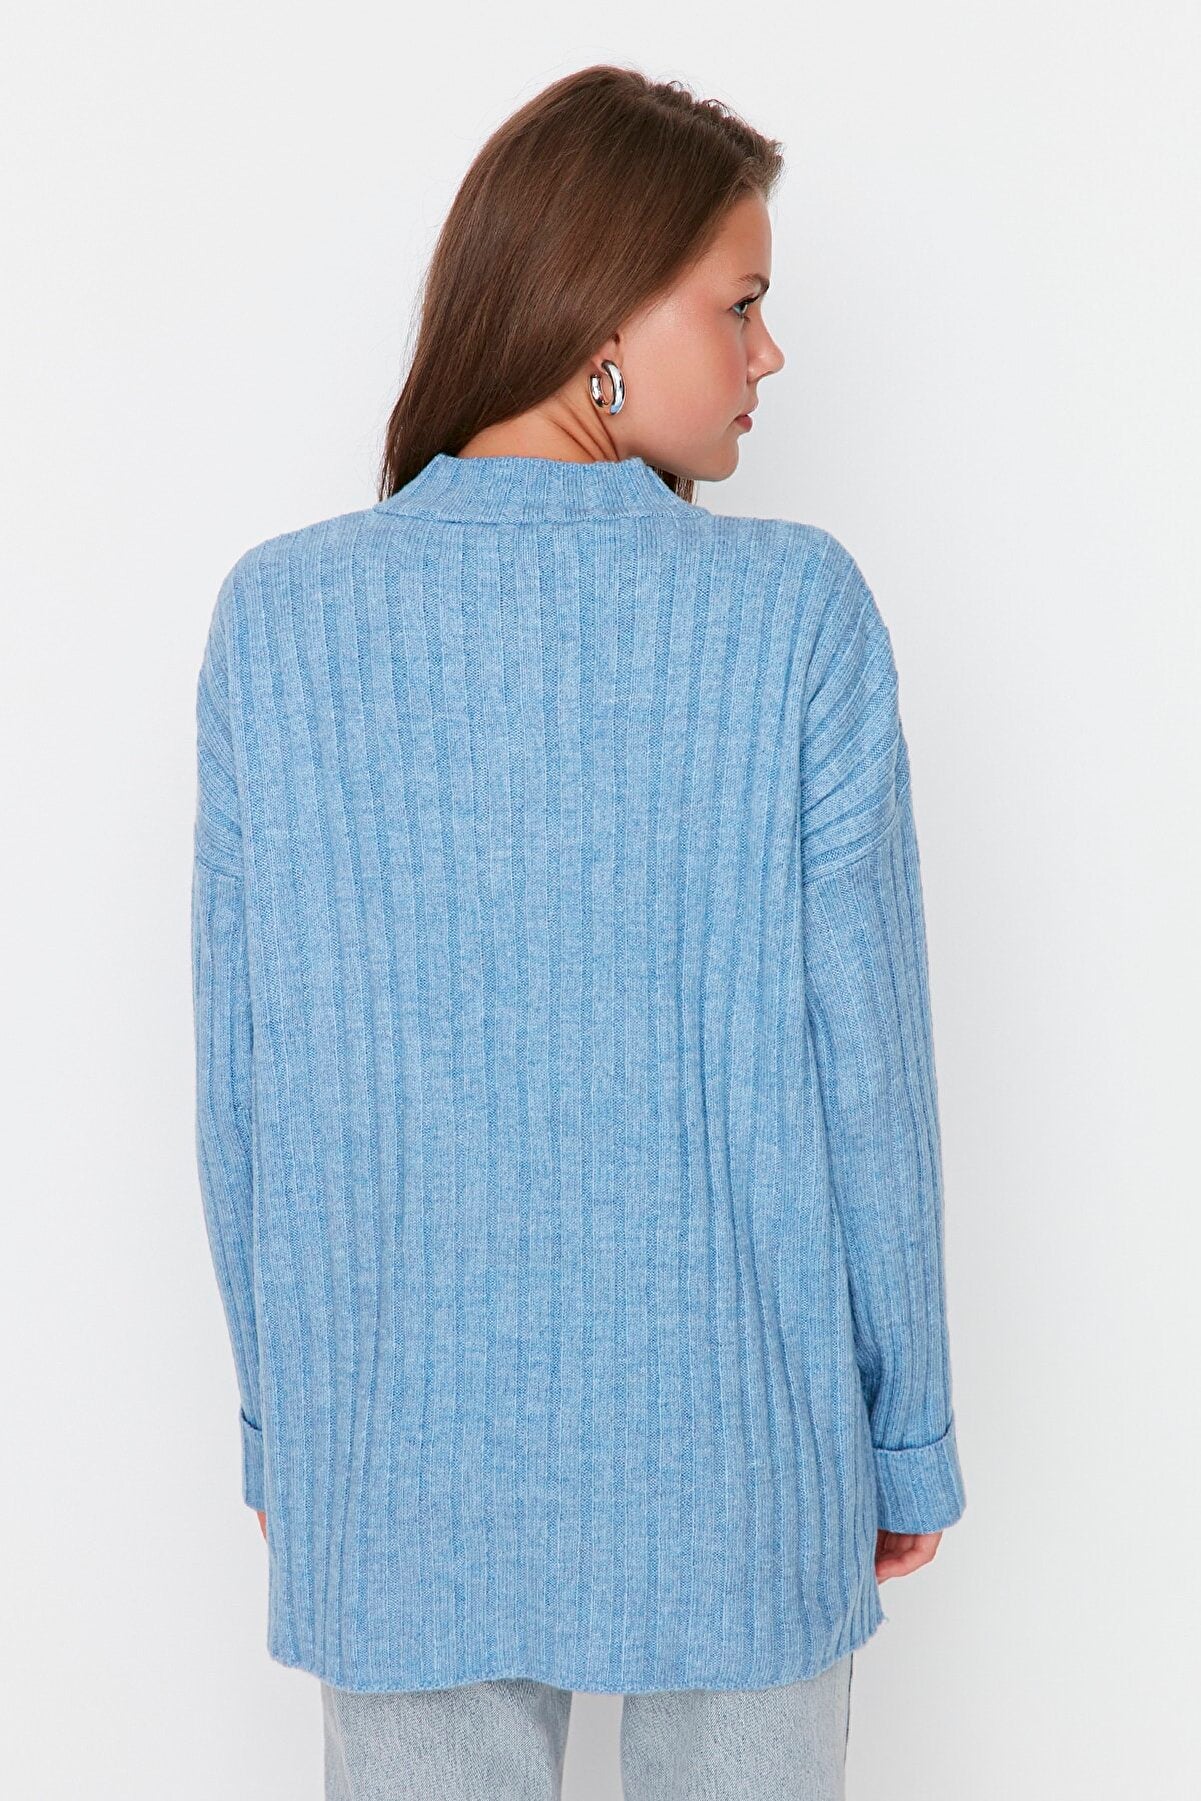 Buttoned Corduroy Knitwear Sweater